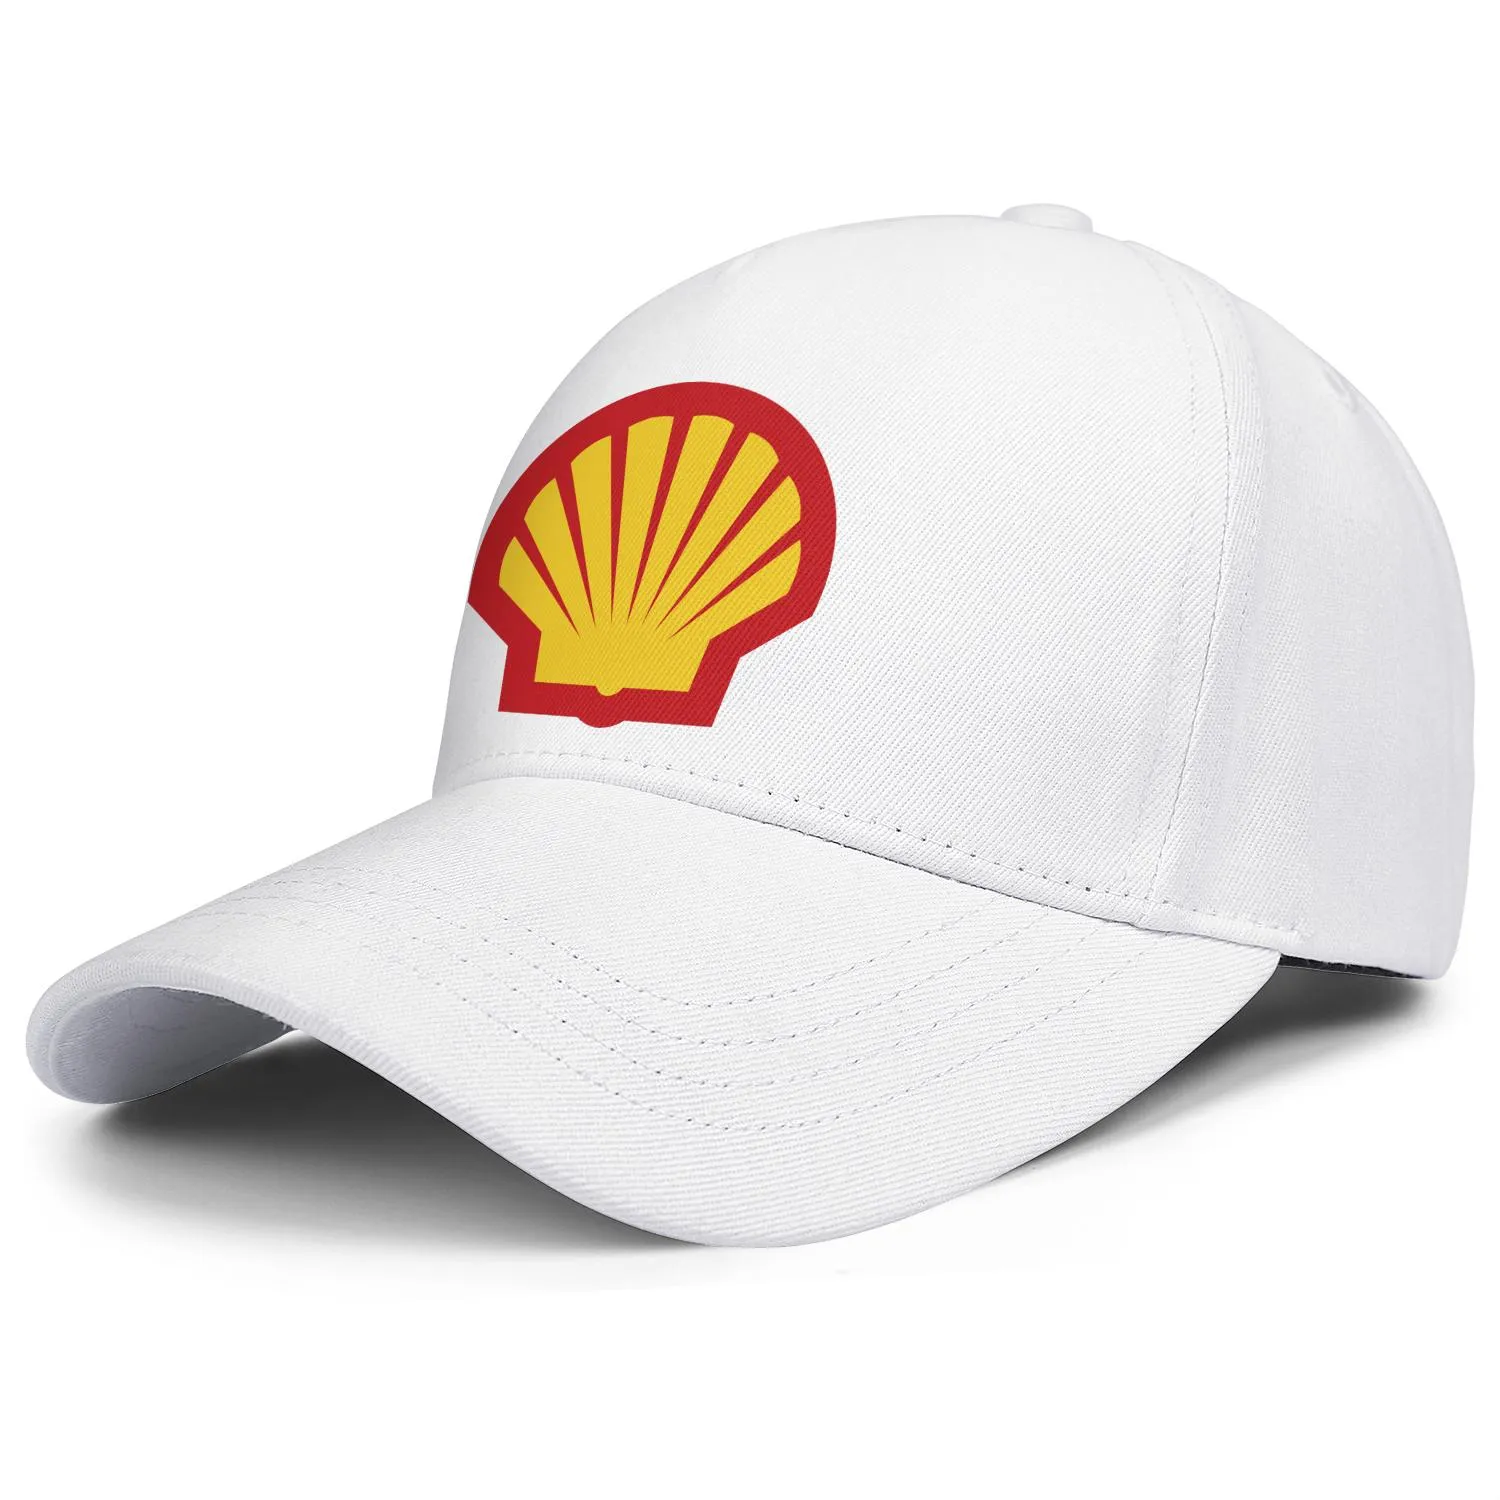 Shell gasoline gasolinera logo hombres y mujeres gorra de camionero ajustable equipado vintage lindo baseballhats localizador gasolina symbo250o